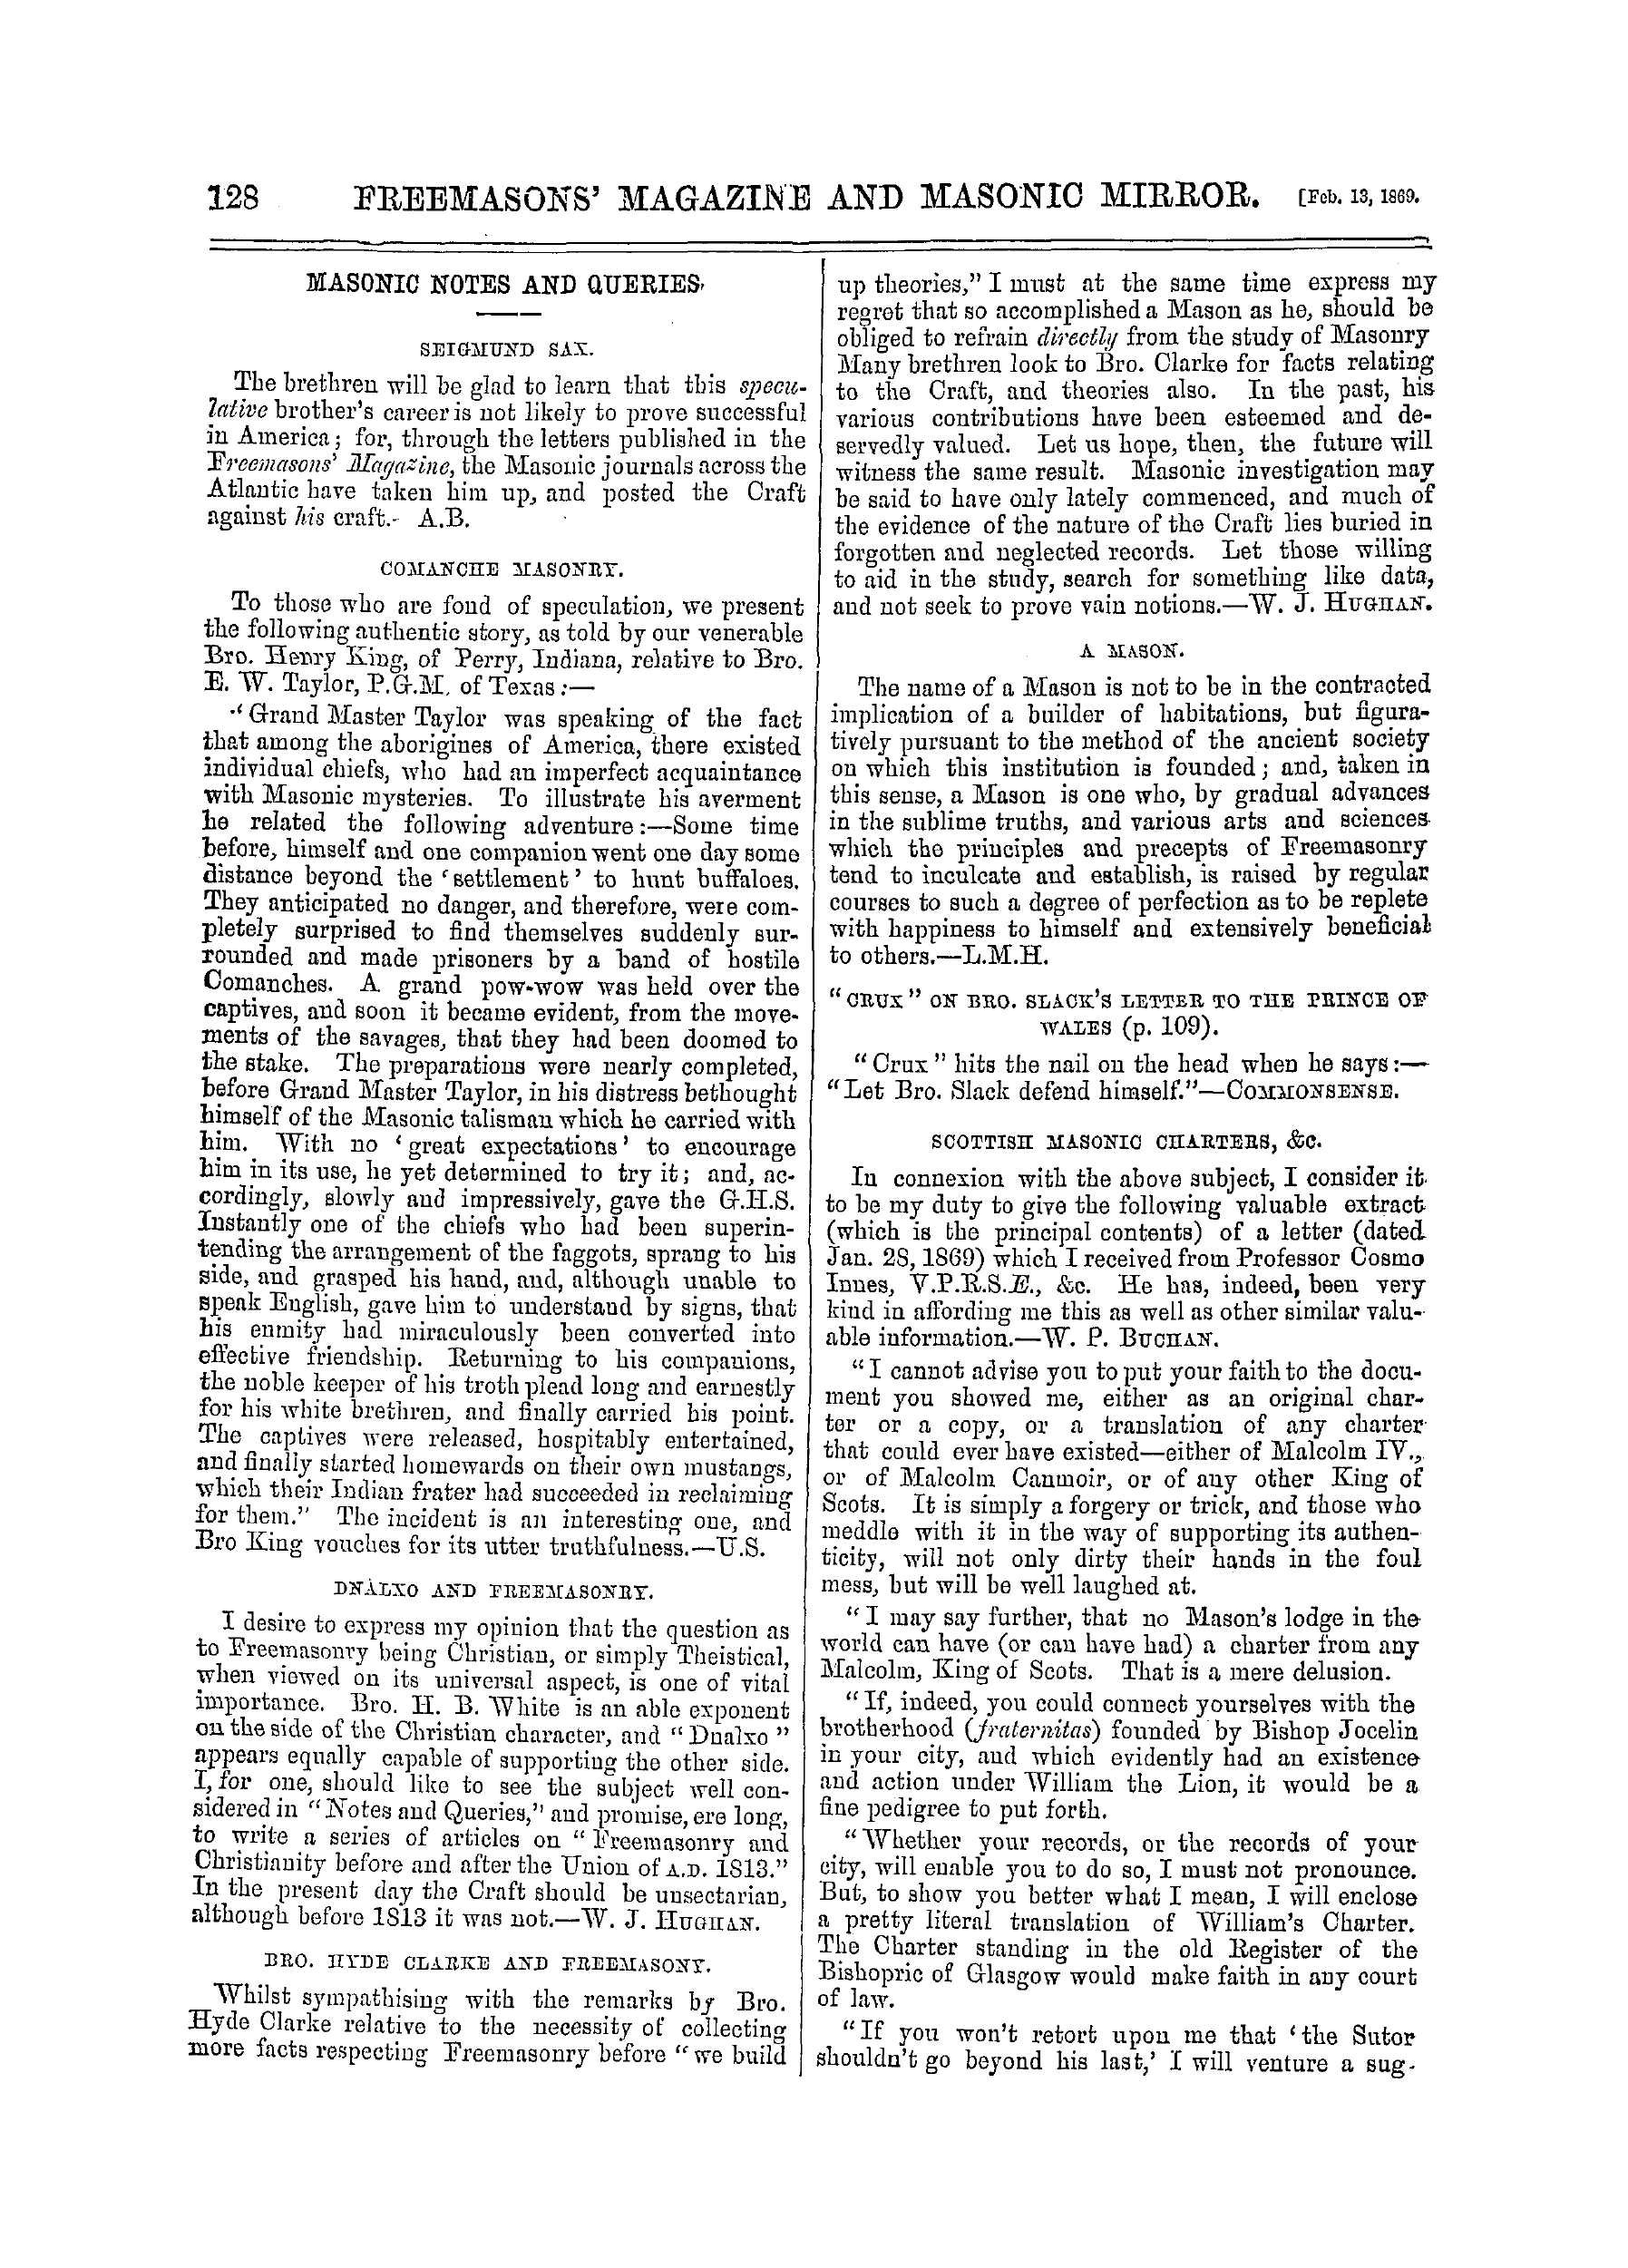 The Freemasons' Monthly Magazine: 1869-02-13: 8